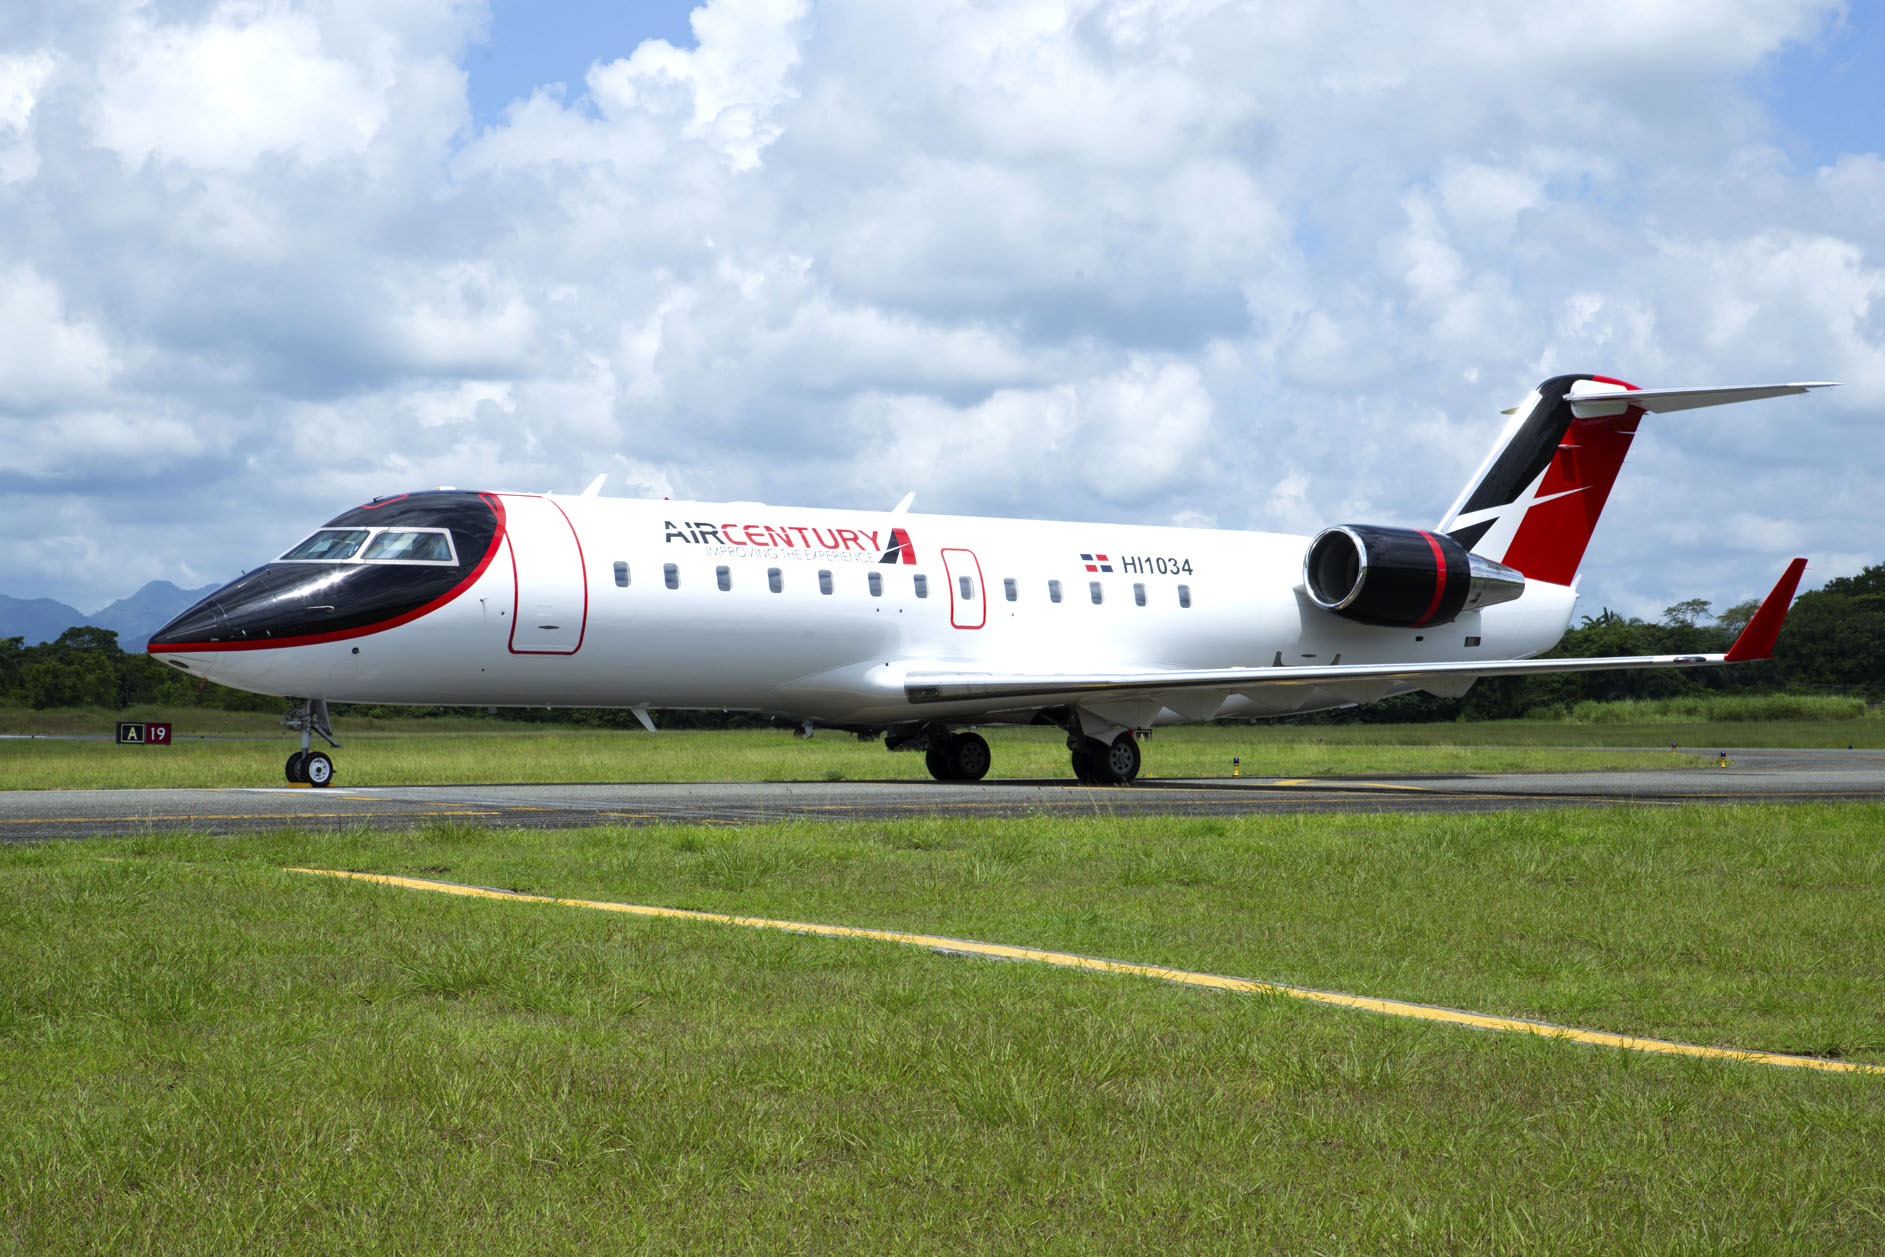 Air Century volará a las ciudades cubanas de La Habana y Santiago